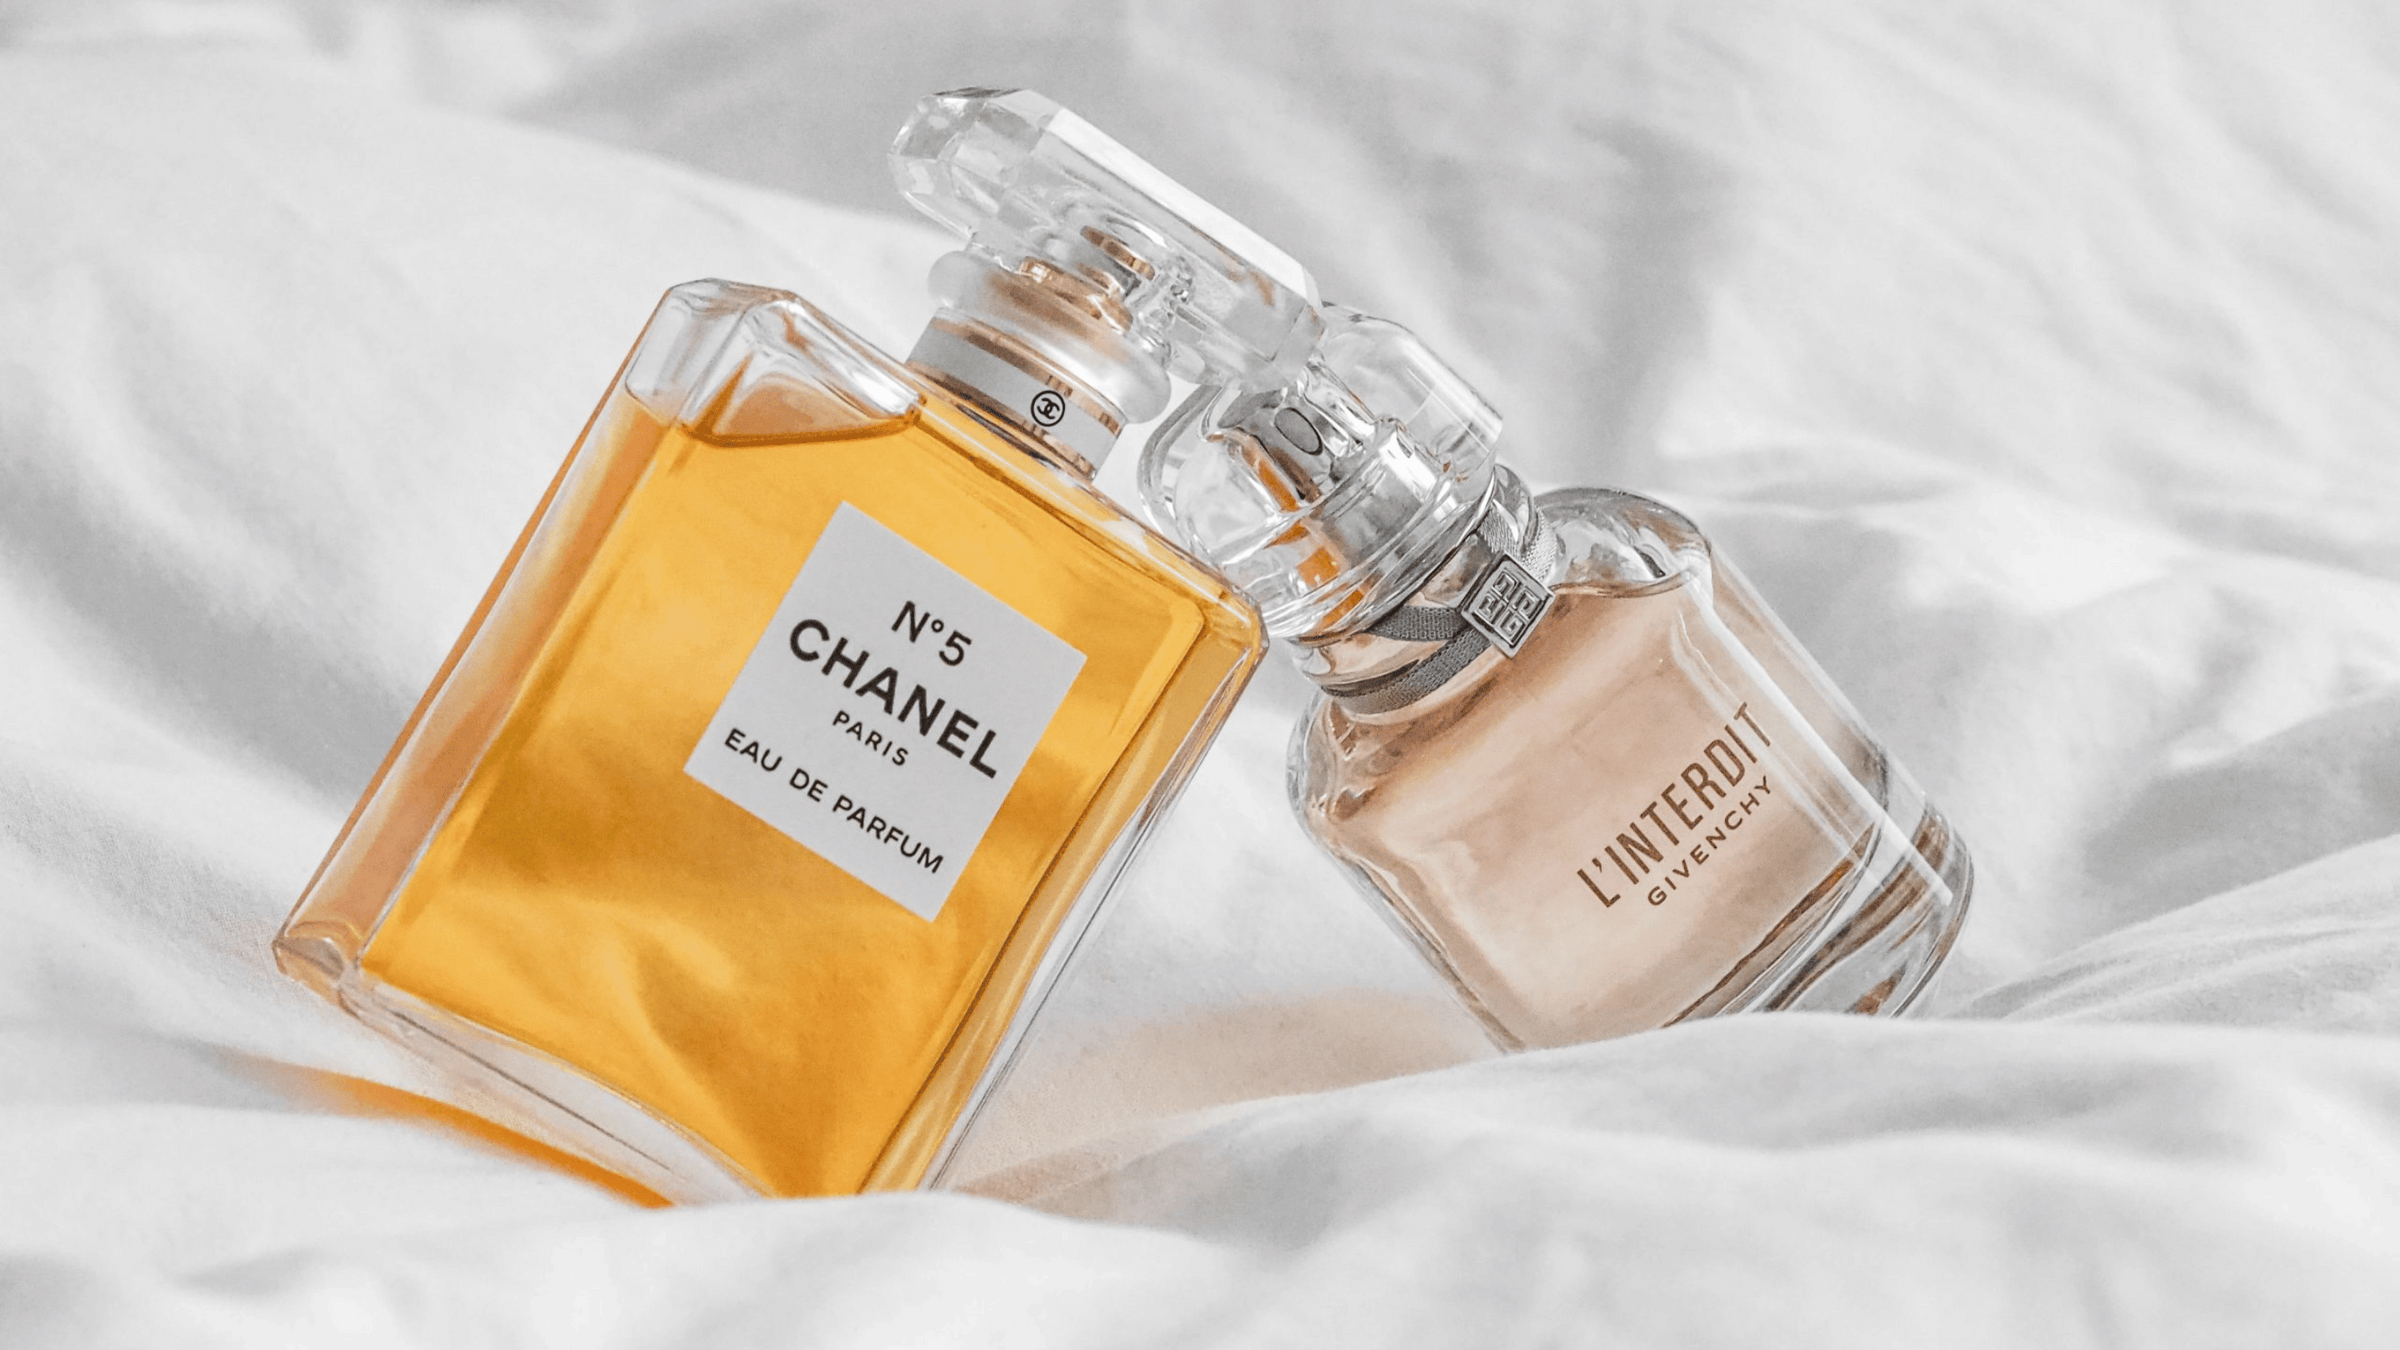 Två parfymflaskor, en av Chanel N°5 och en av Givenchy L'Interdit, ligger på en mjuk vit tygyta.